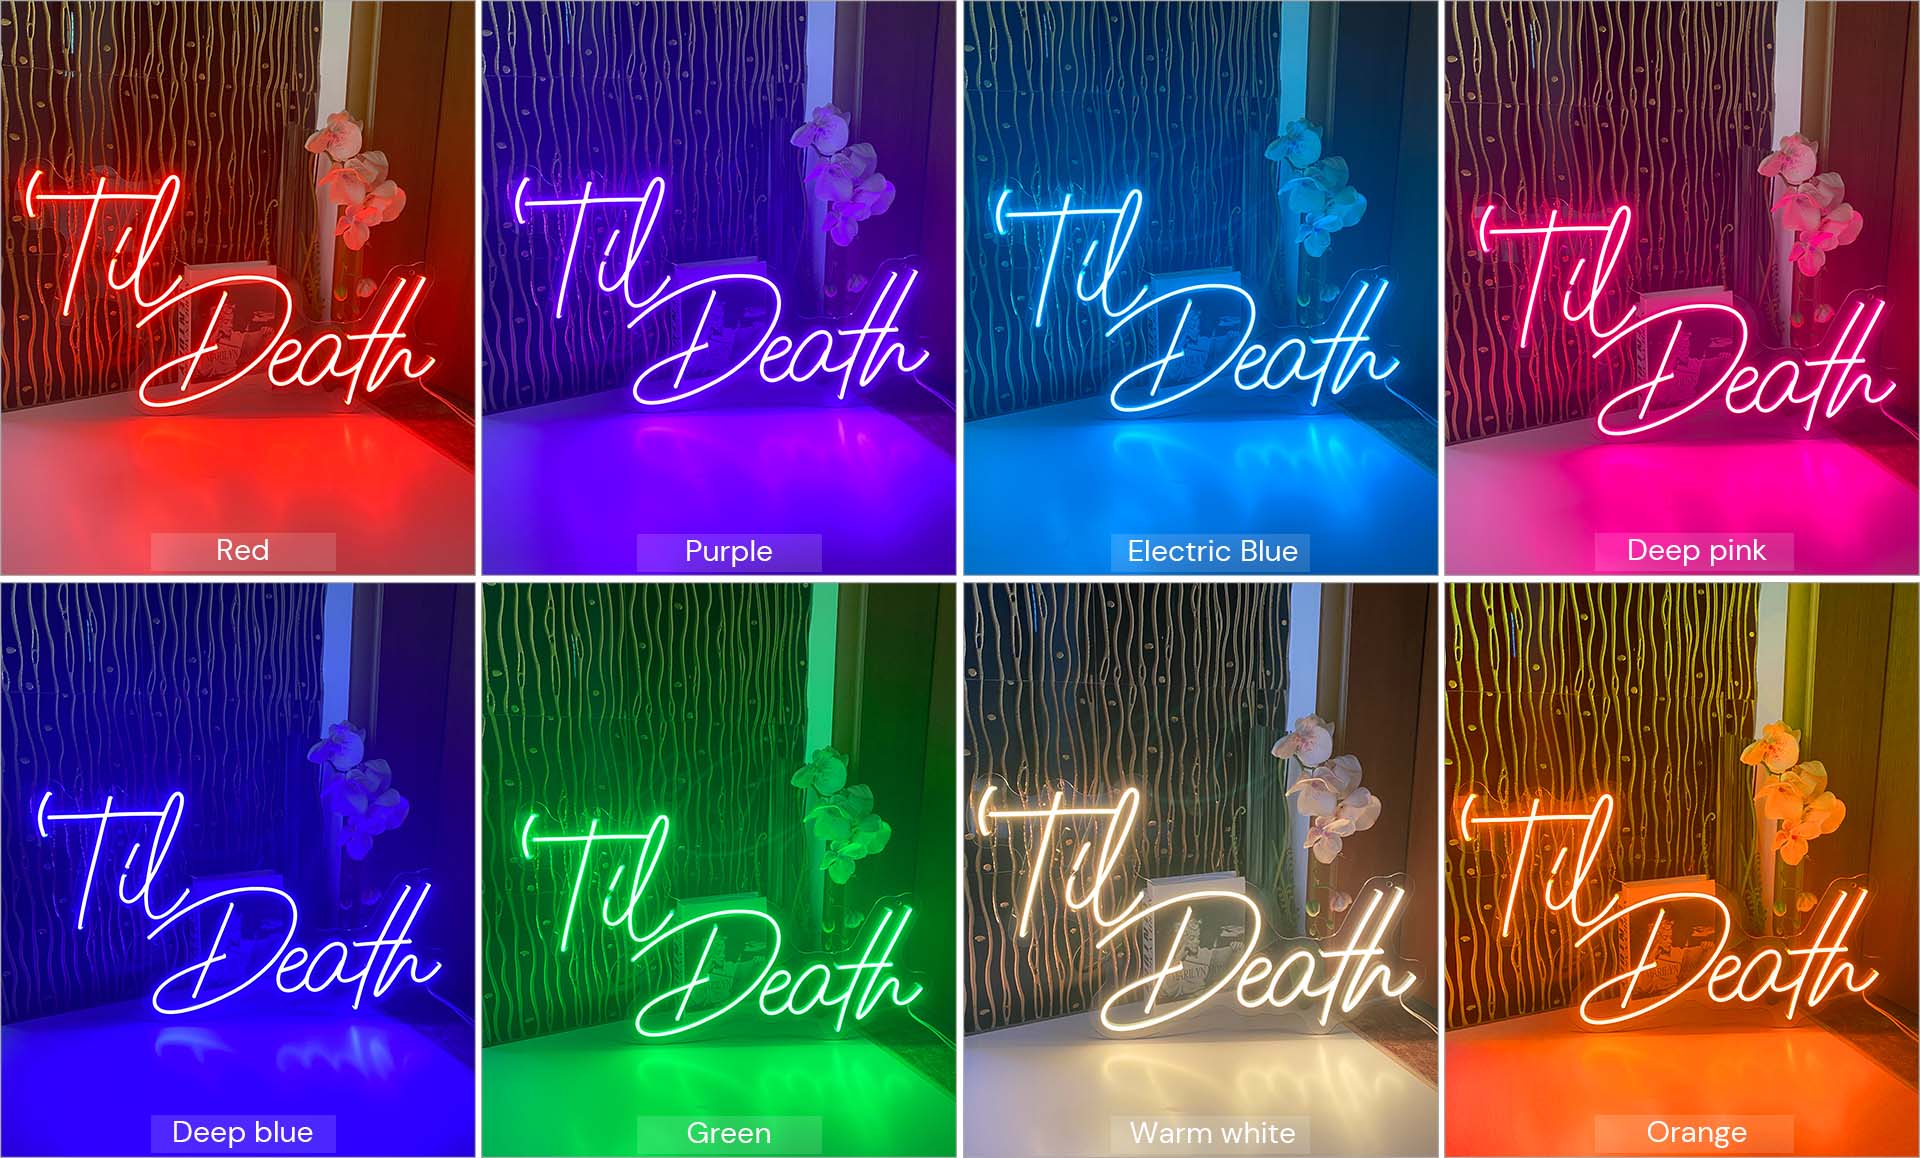 Til death do us part neon sign